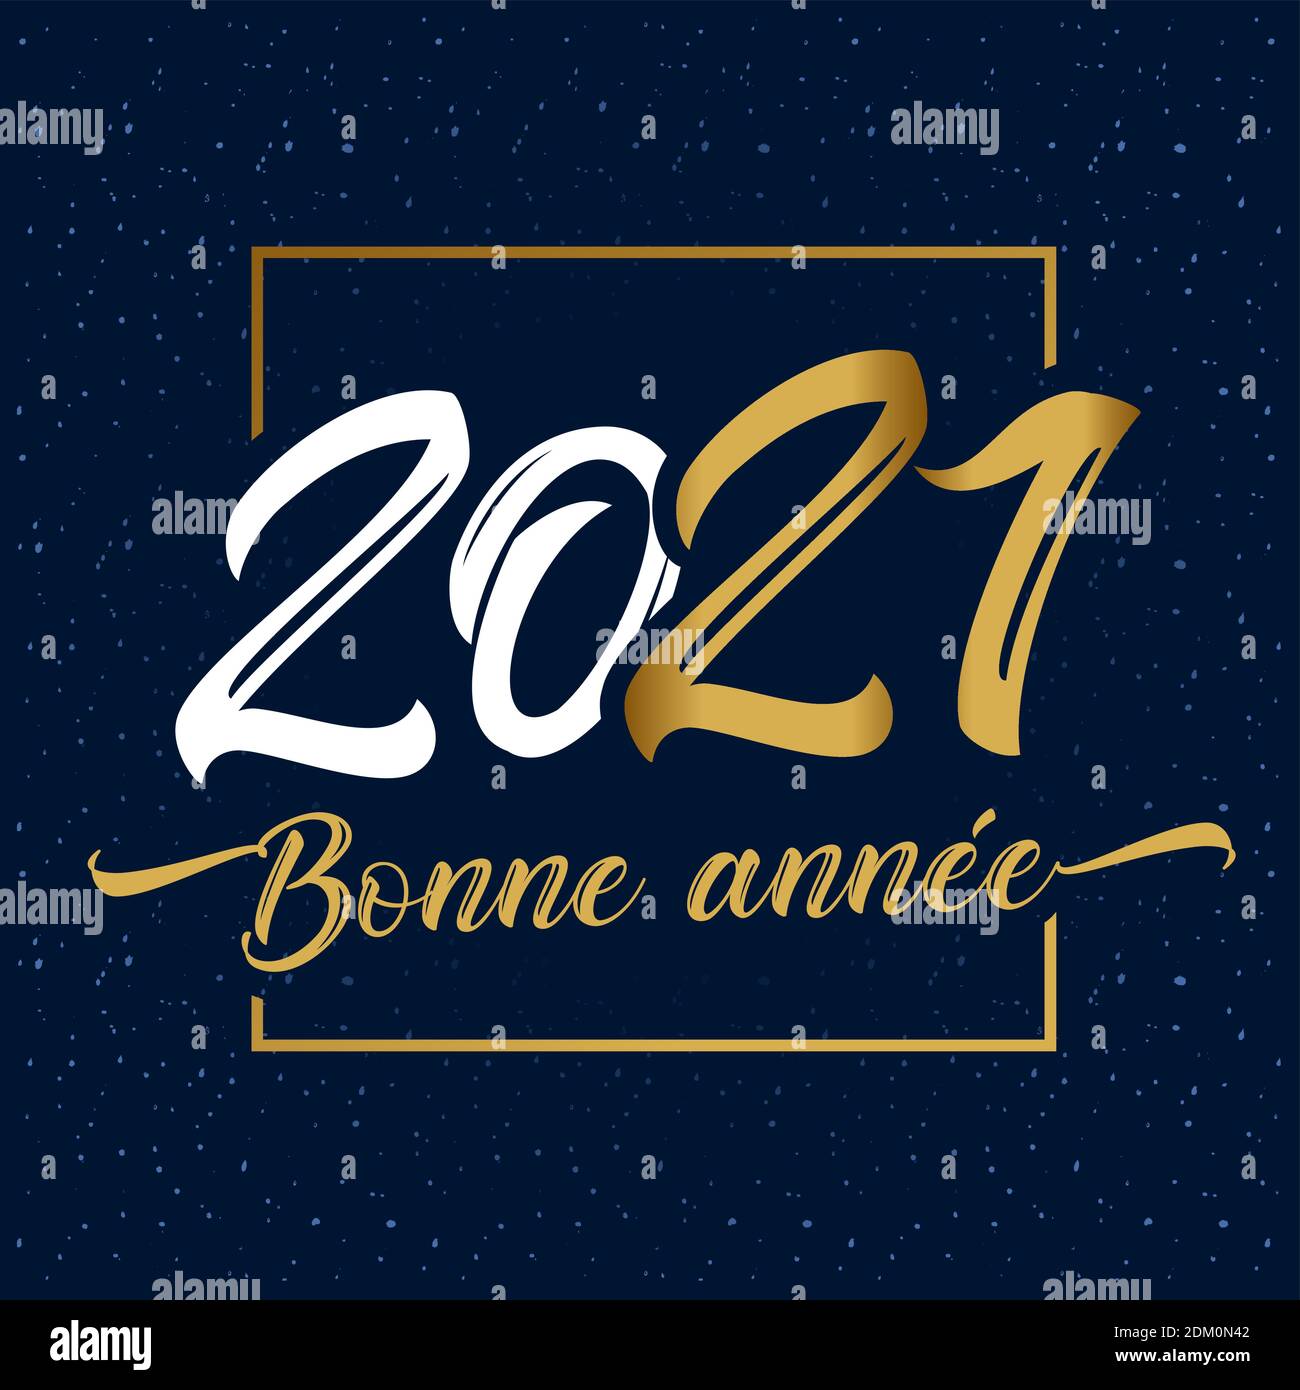 Bonne annee texte français - bonne année 2021 carte de calligraphie élégante. Illustration vectorielle élégante avec chiffres dorés et joyeux nouvel an Illustration de Vecteur